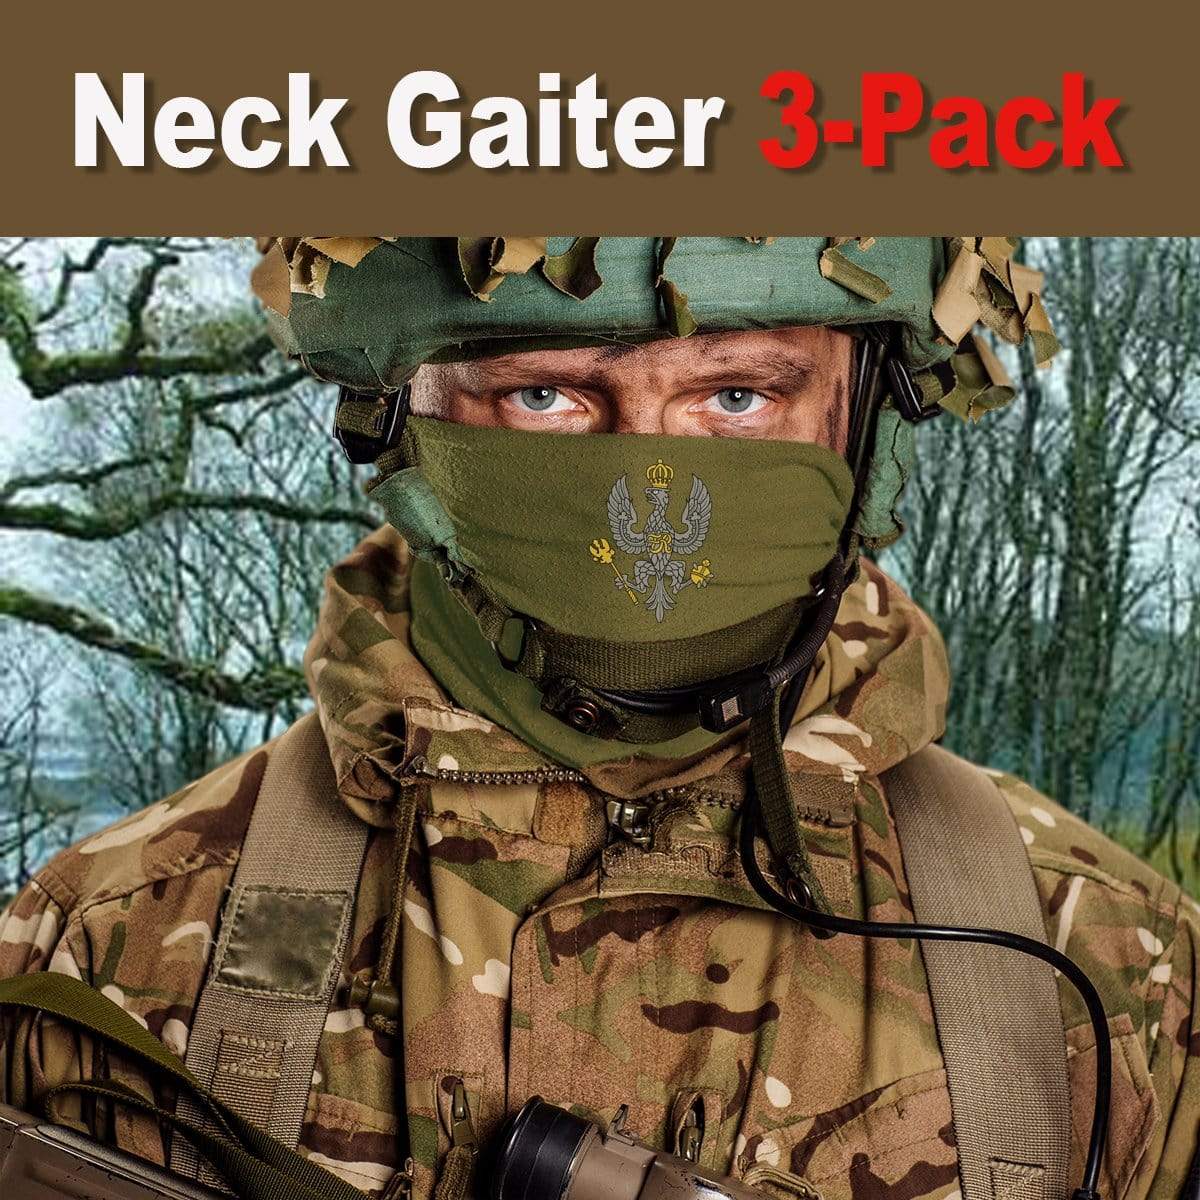 neck gaiter Bandana 3-Pack - King's Royal Hussars Neck Gaiter 3-Pack King's Royal Hussars Neck Gaiter/Headover 3-Pack